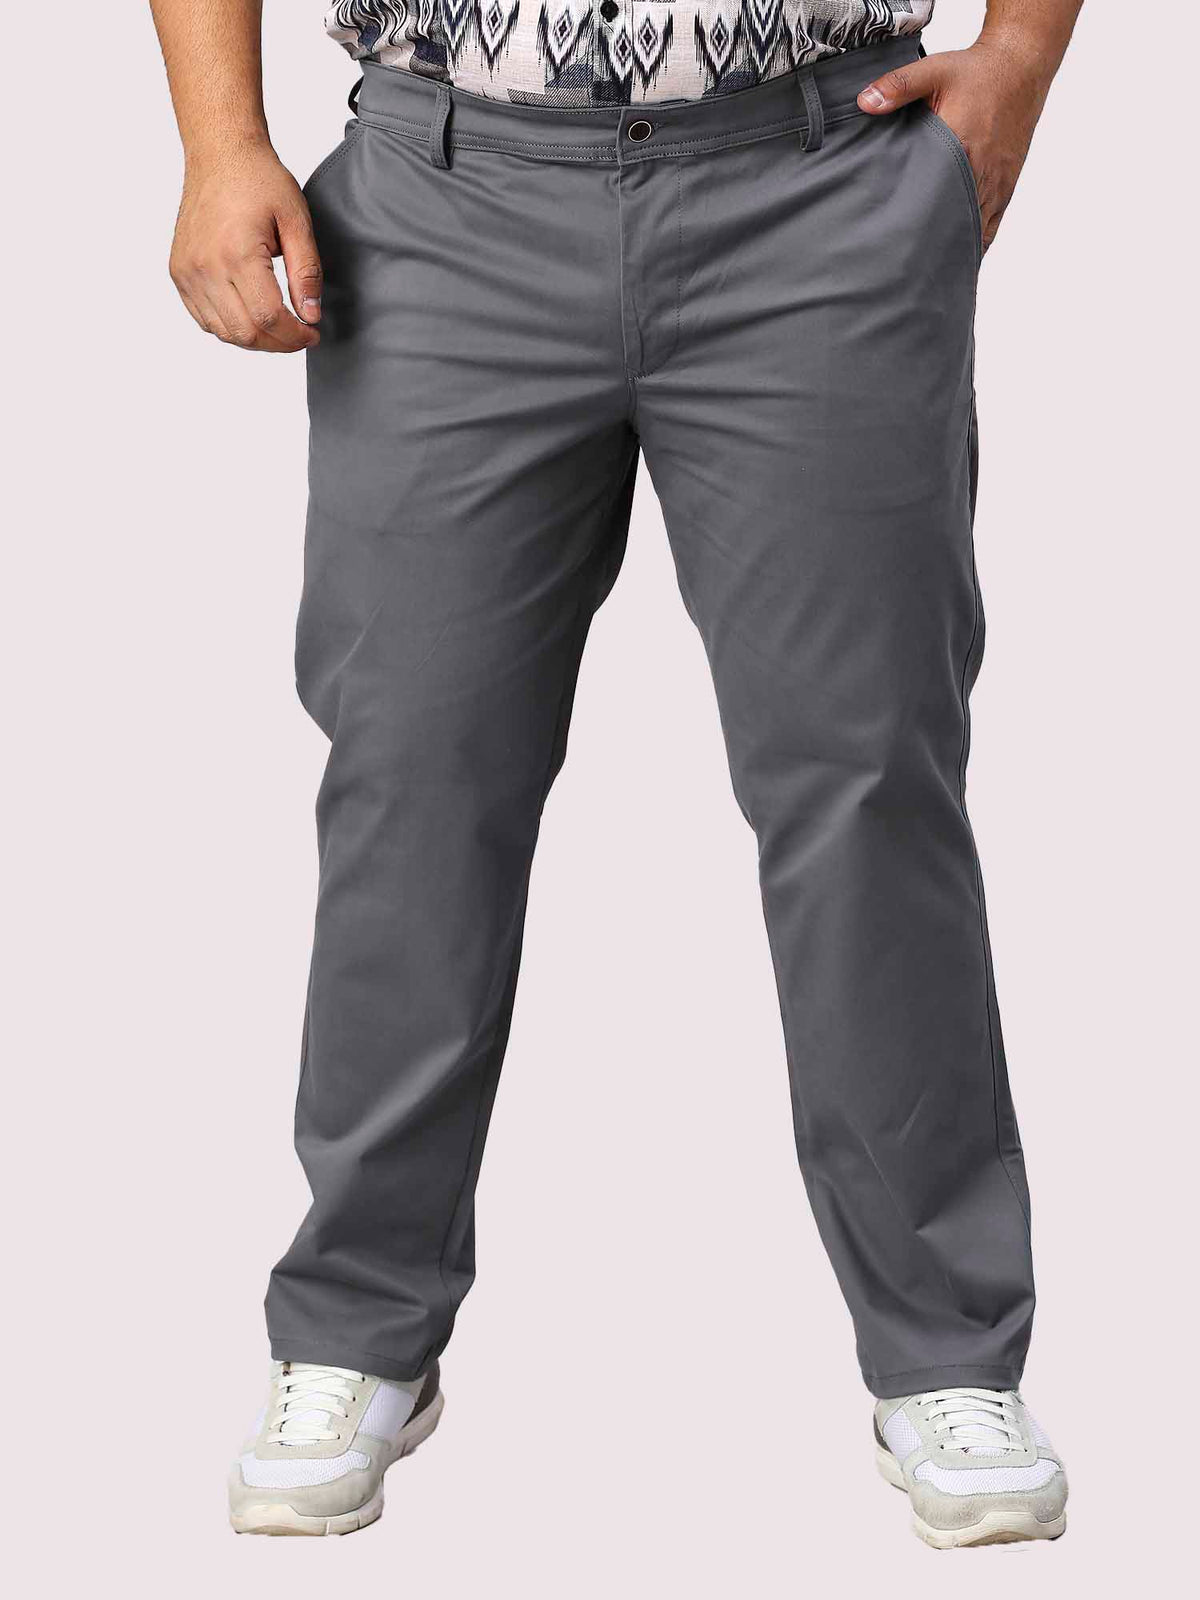 Grey Solid Cotton Trouser Men's Plus Size